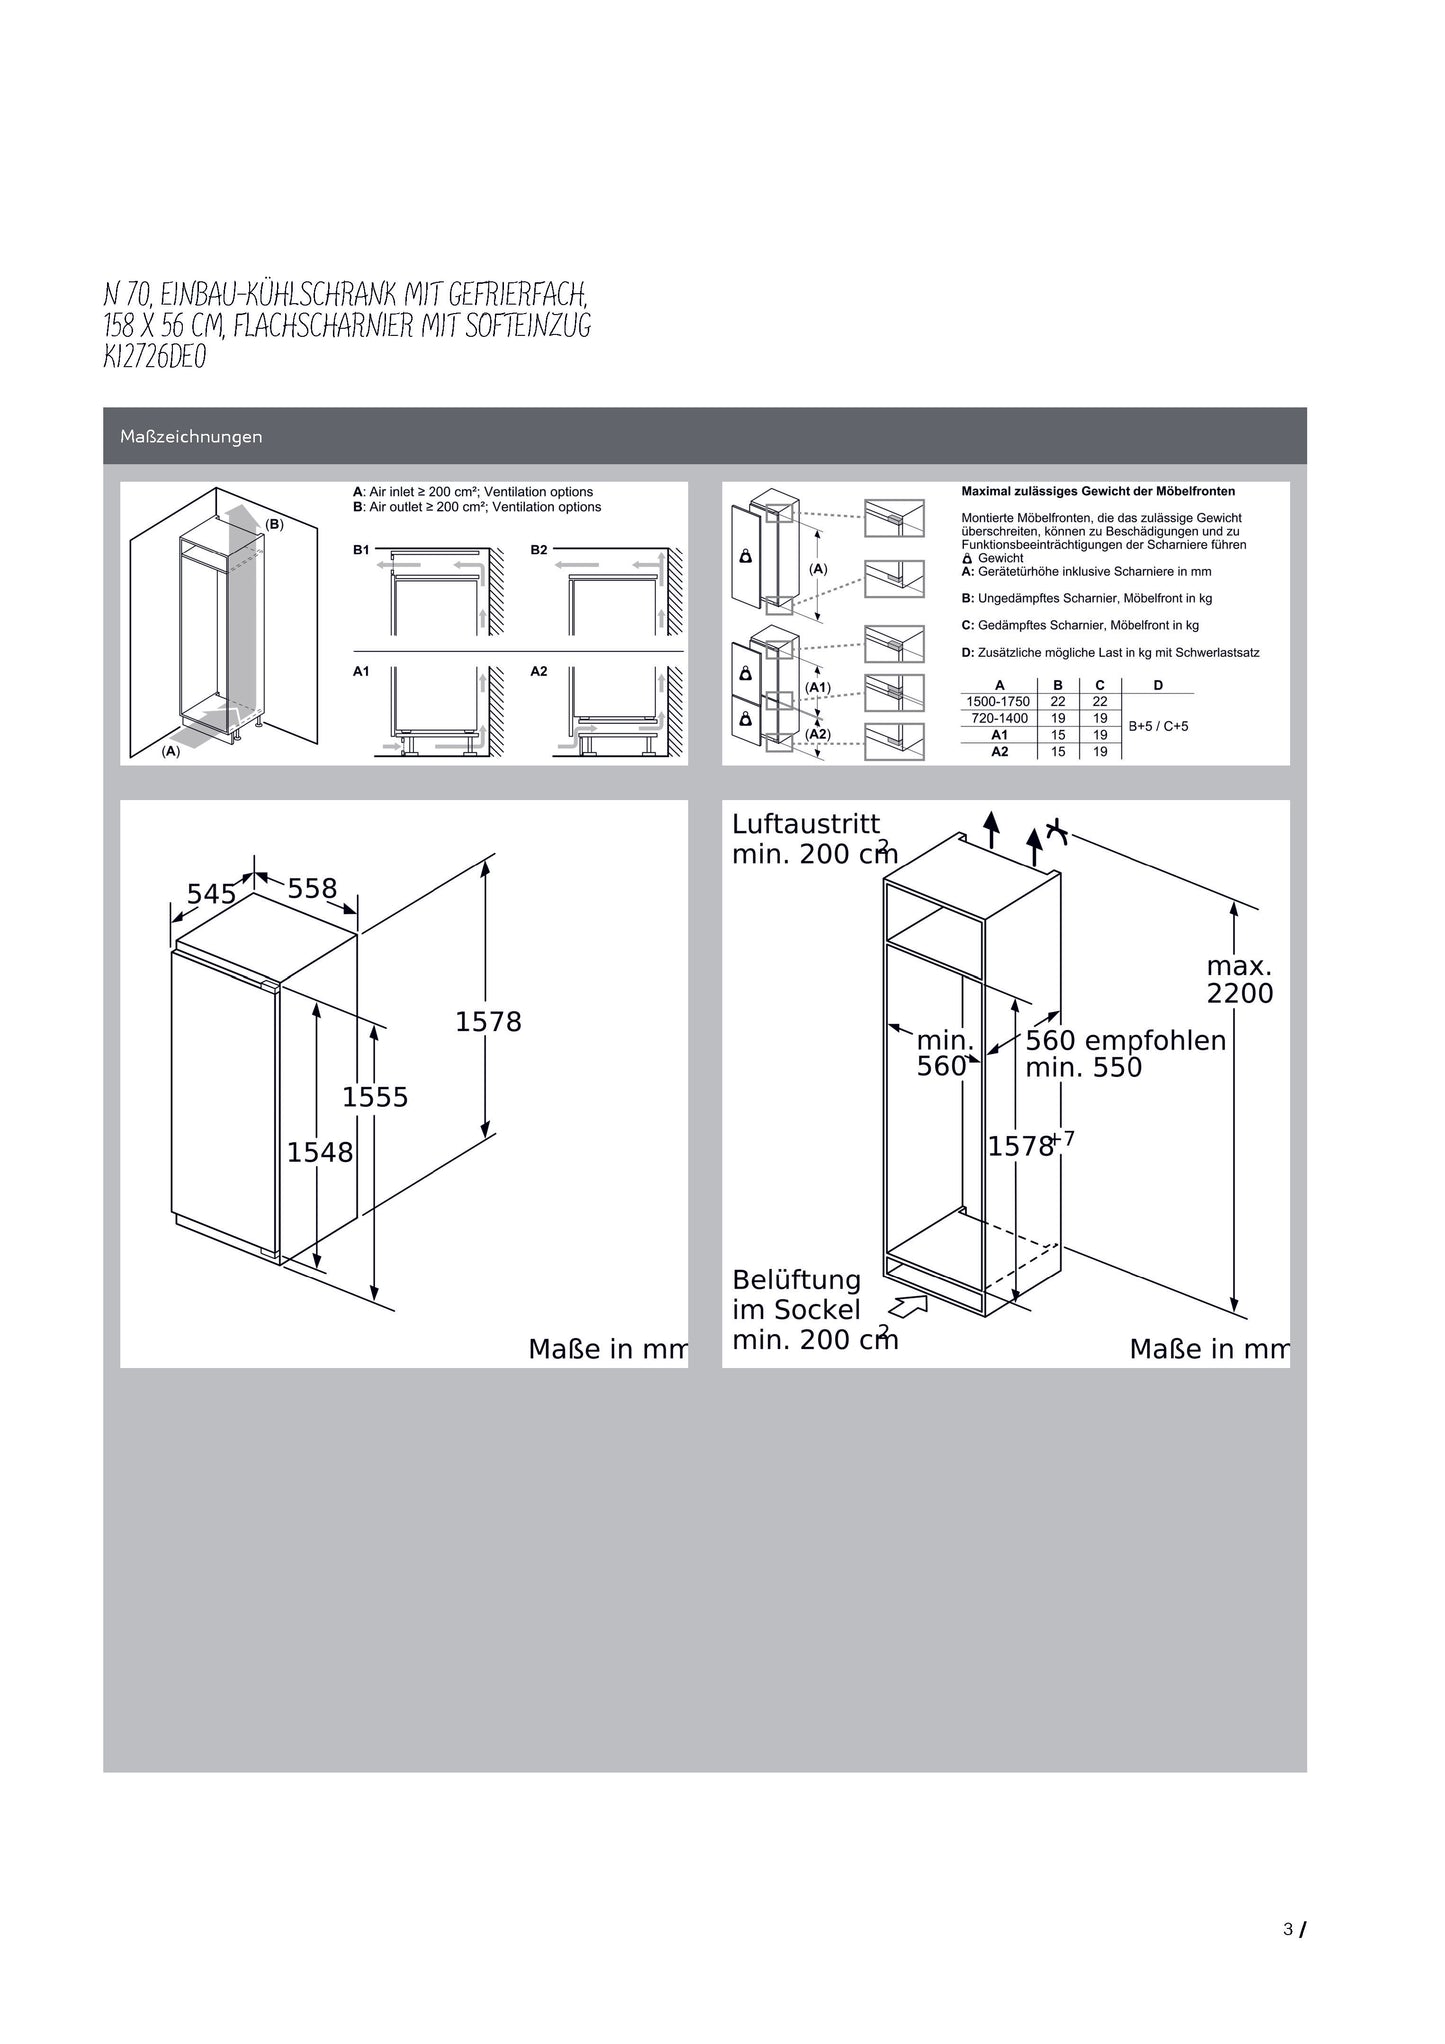 Neff Einbau-Kühlschrank mit Gefrierfach KI2726DE0